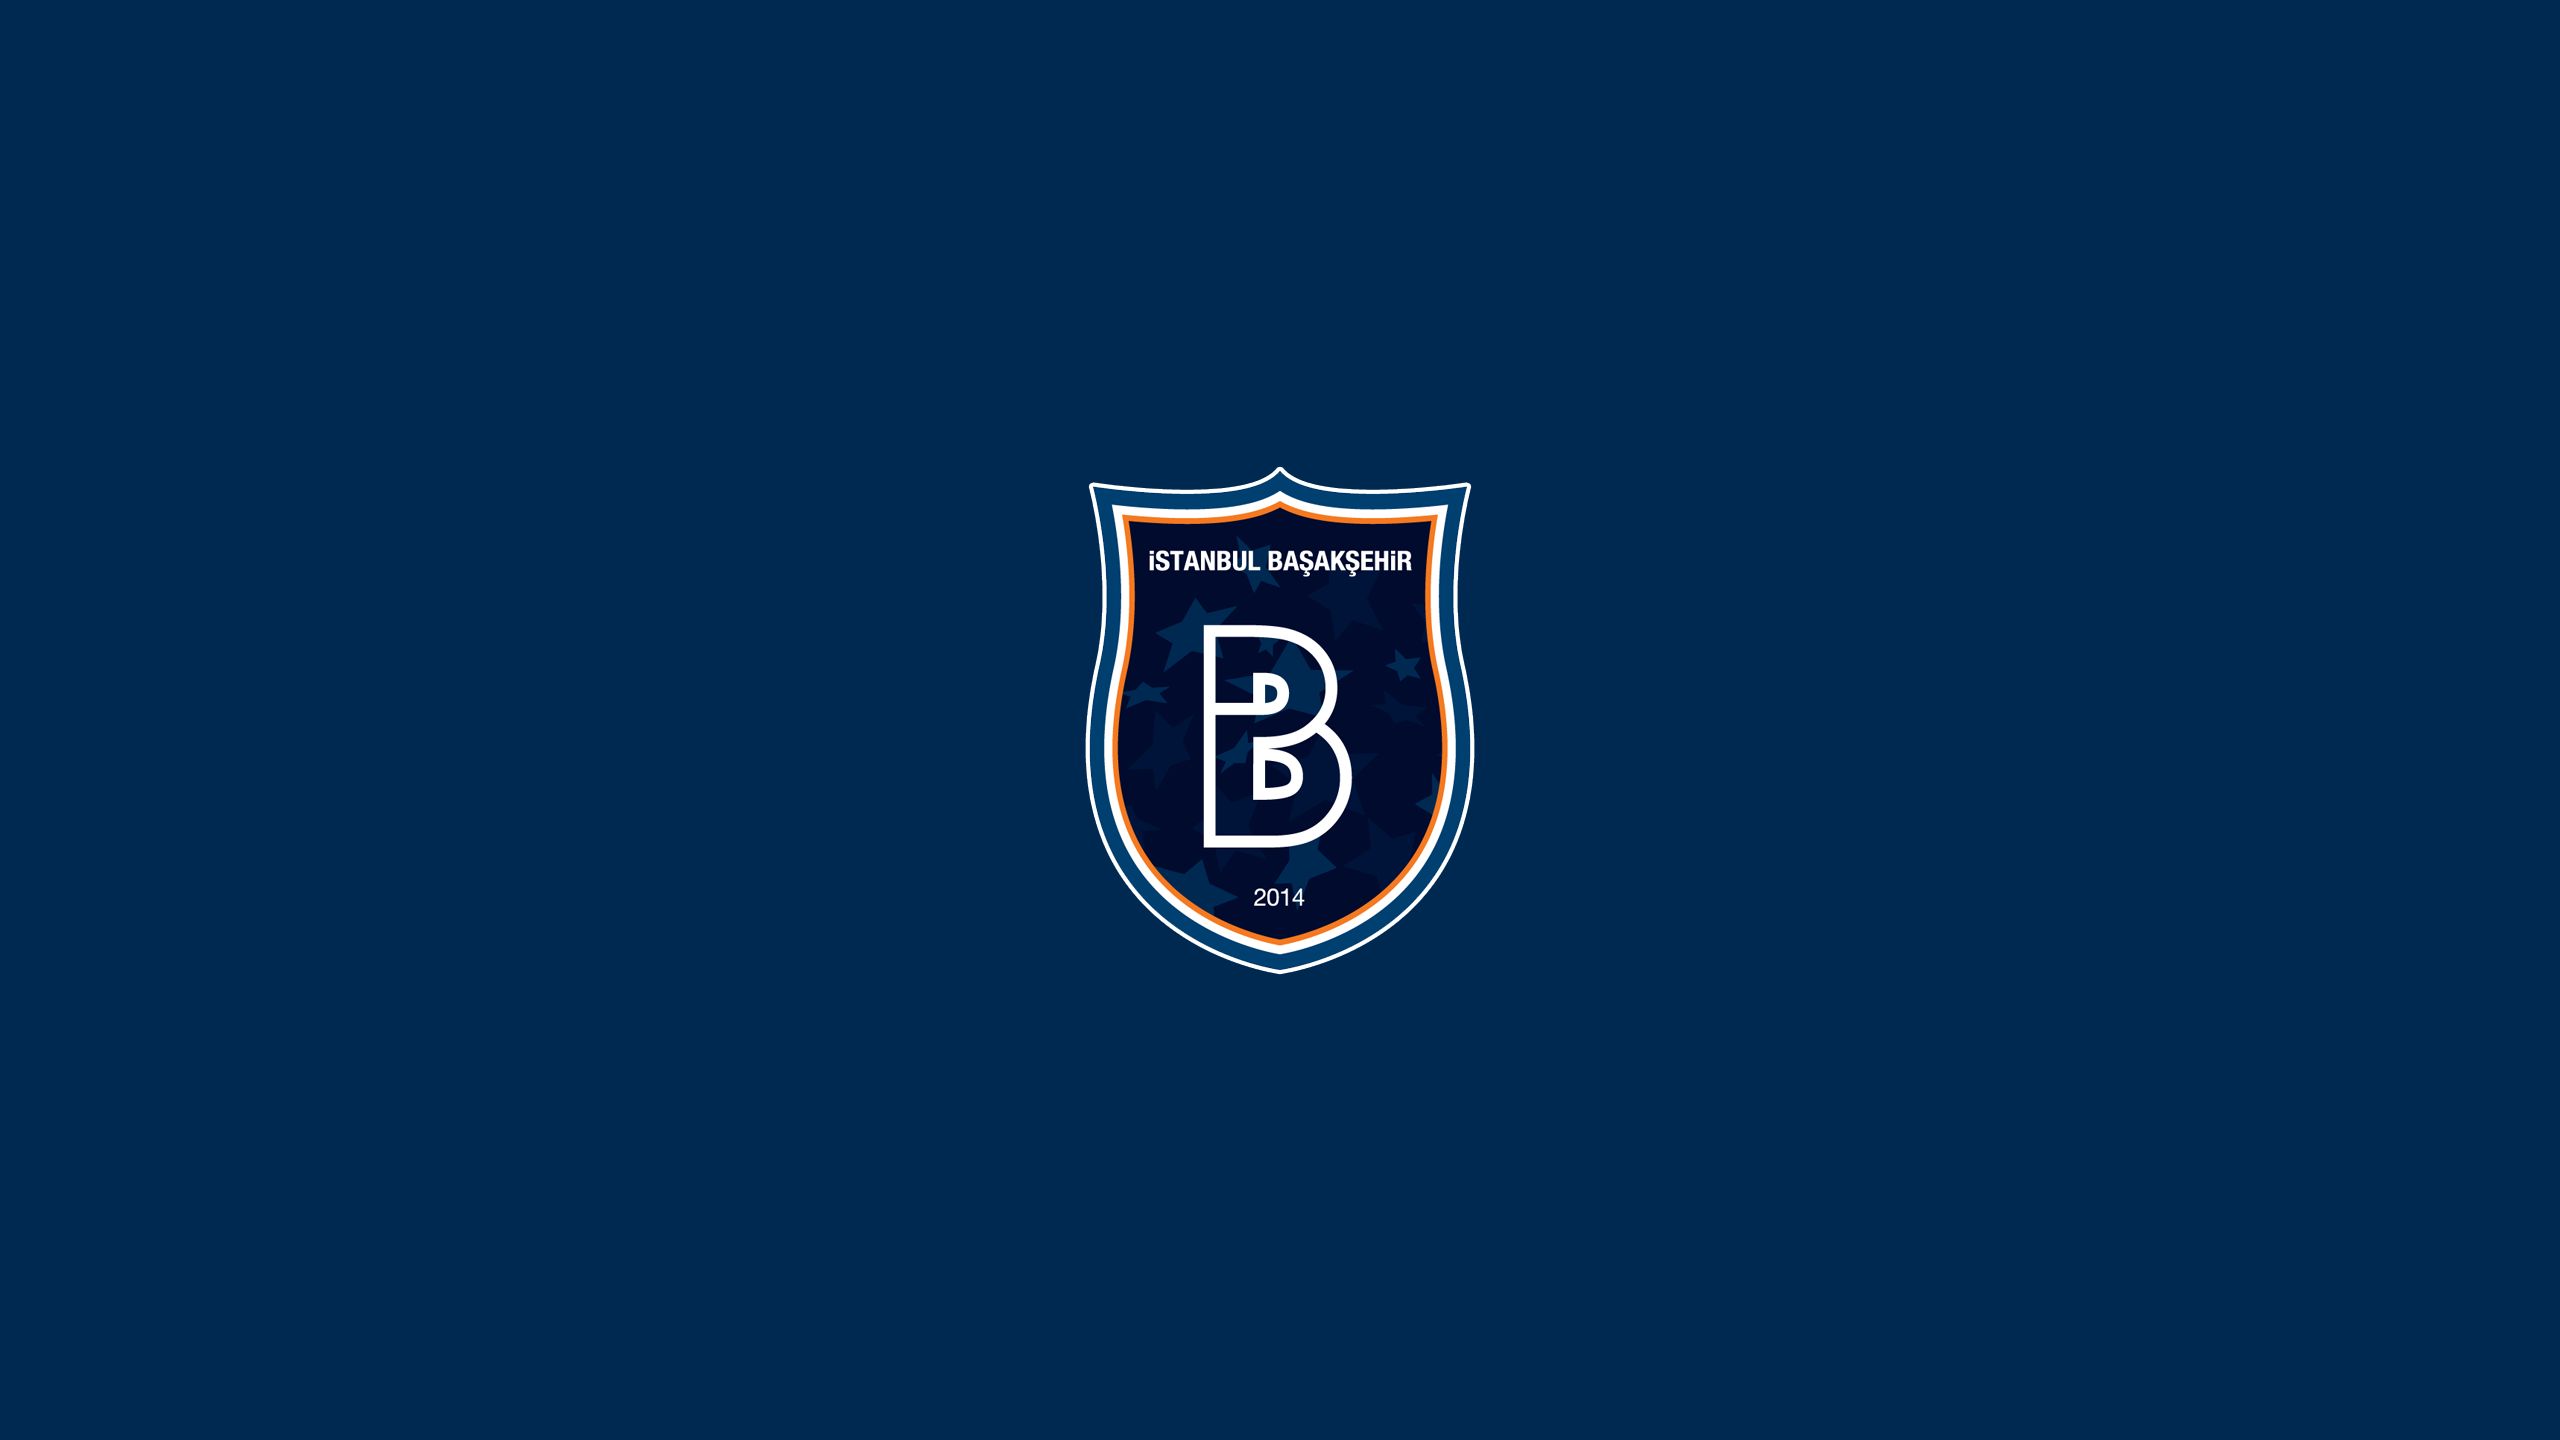 Descarga gratuita de fondo de pantalla para móvil de Fútbol, Logo, Emblema, Deporte, Estambul Başakşehir F K.